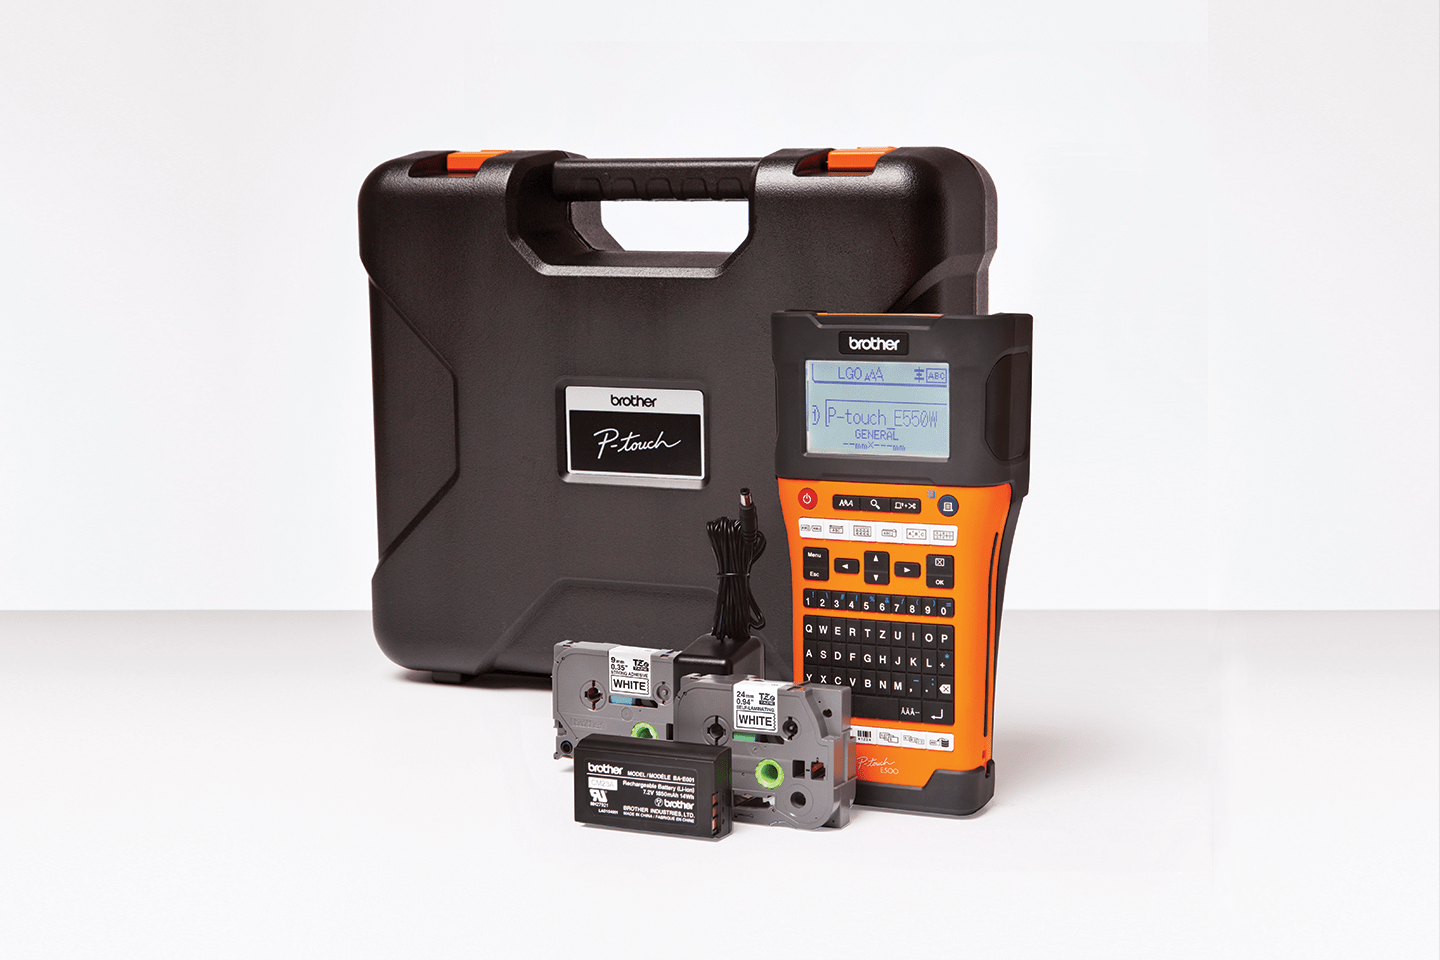 PT-E550WNIVP    märknings-kit för nätverksinstallatörer 2